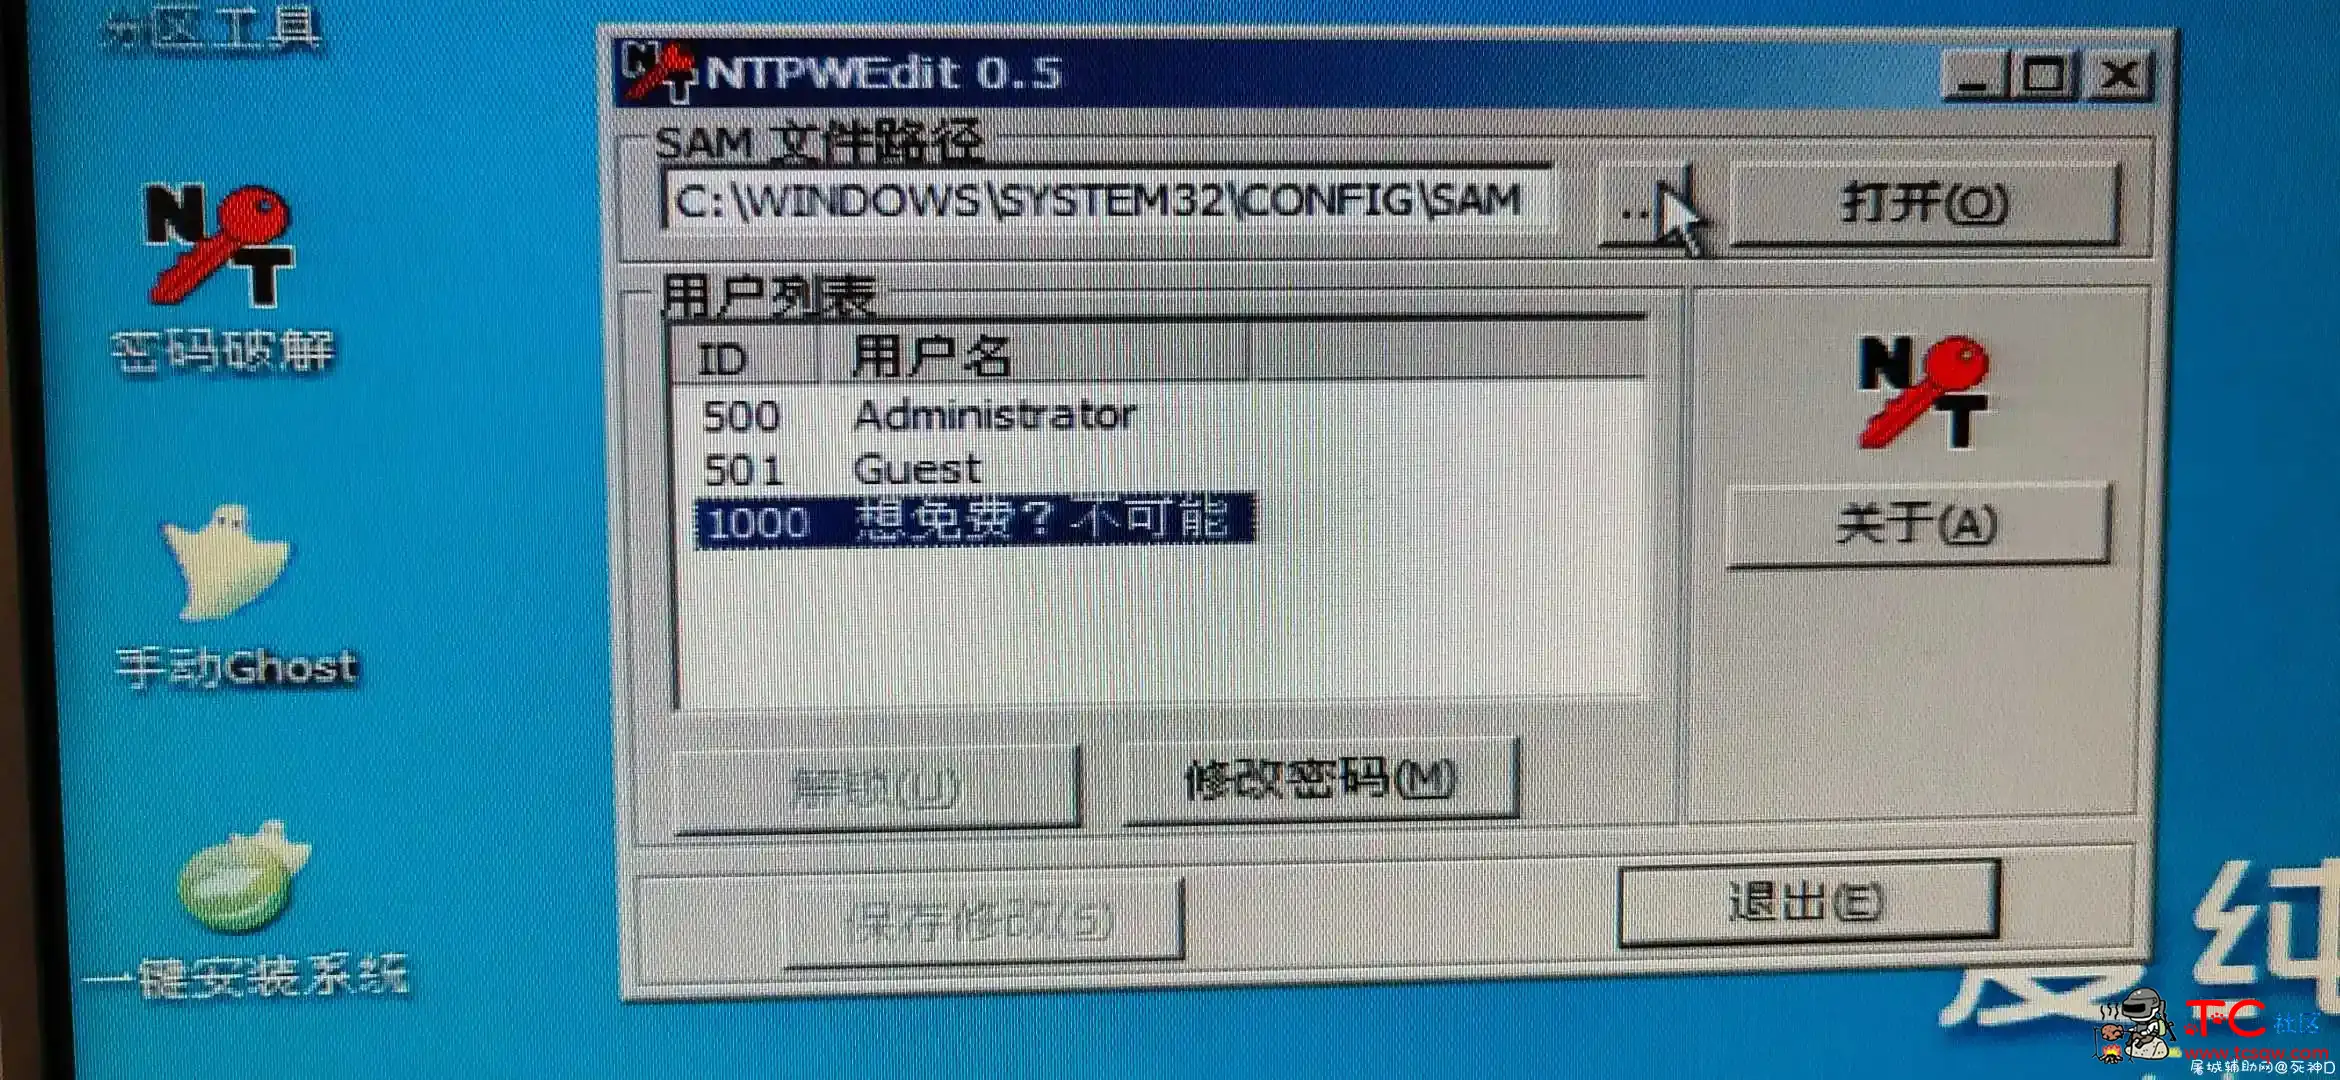 发布锁机软件 屠城辅助网www.tcfz1.com8573